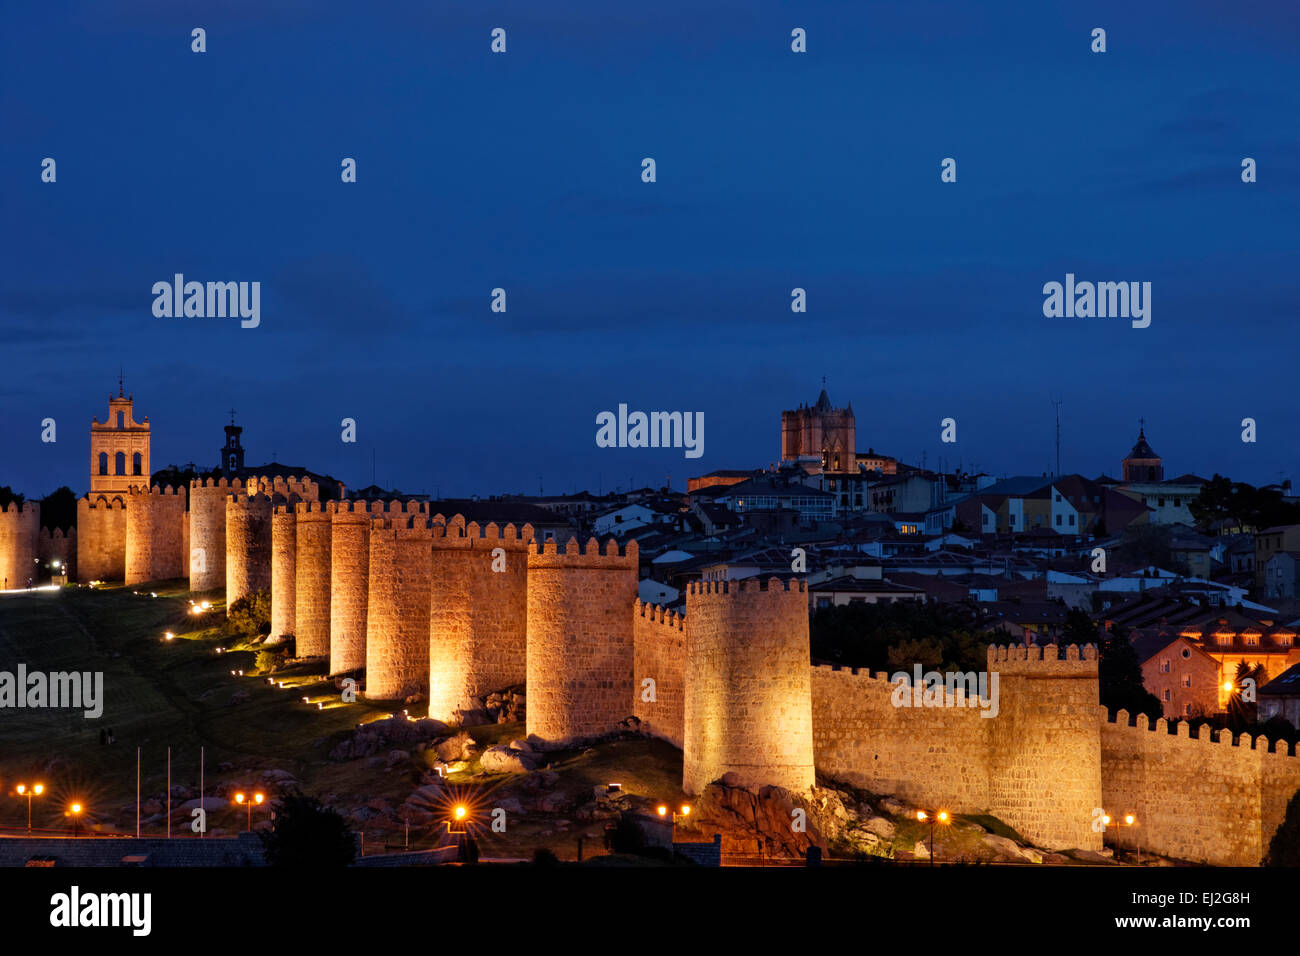 La ciudad de Ávila, España, al anochecer Foto de stock